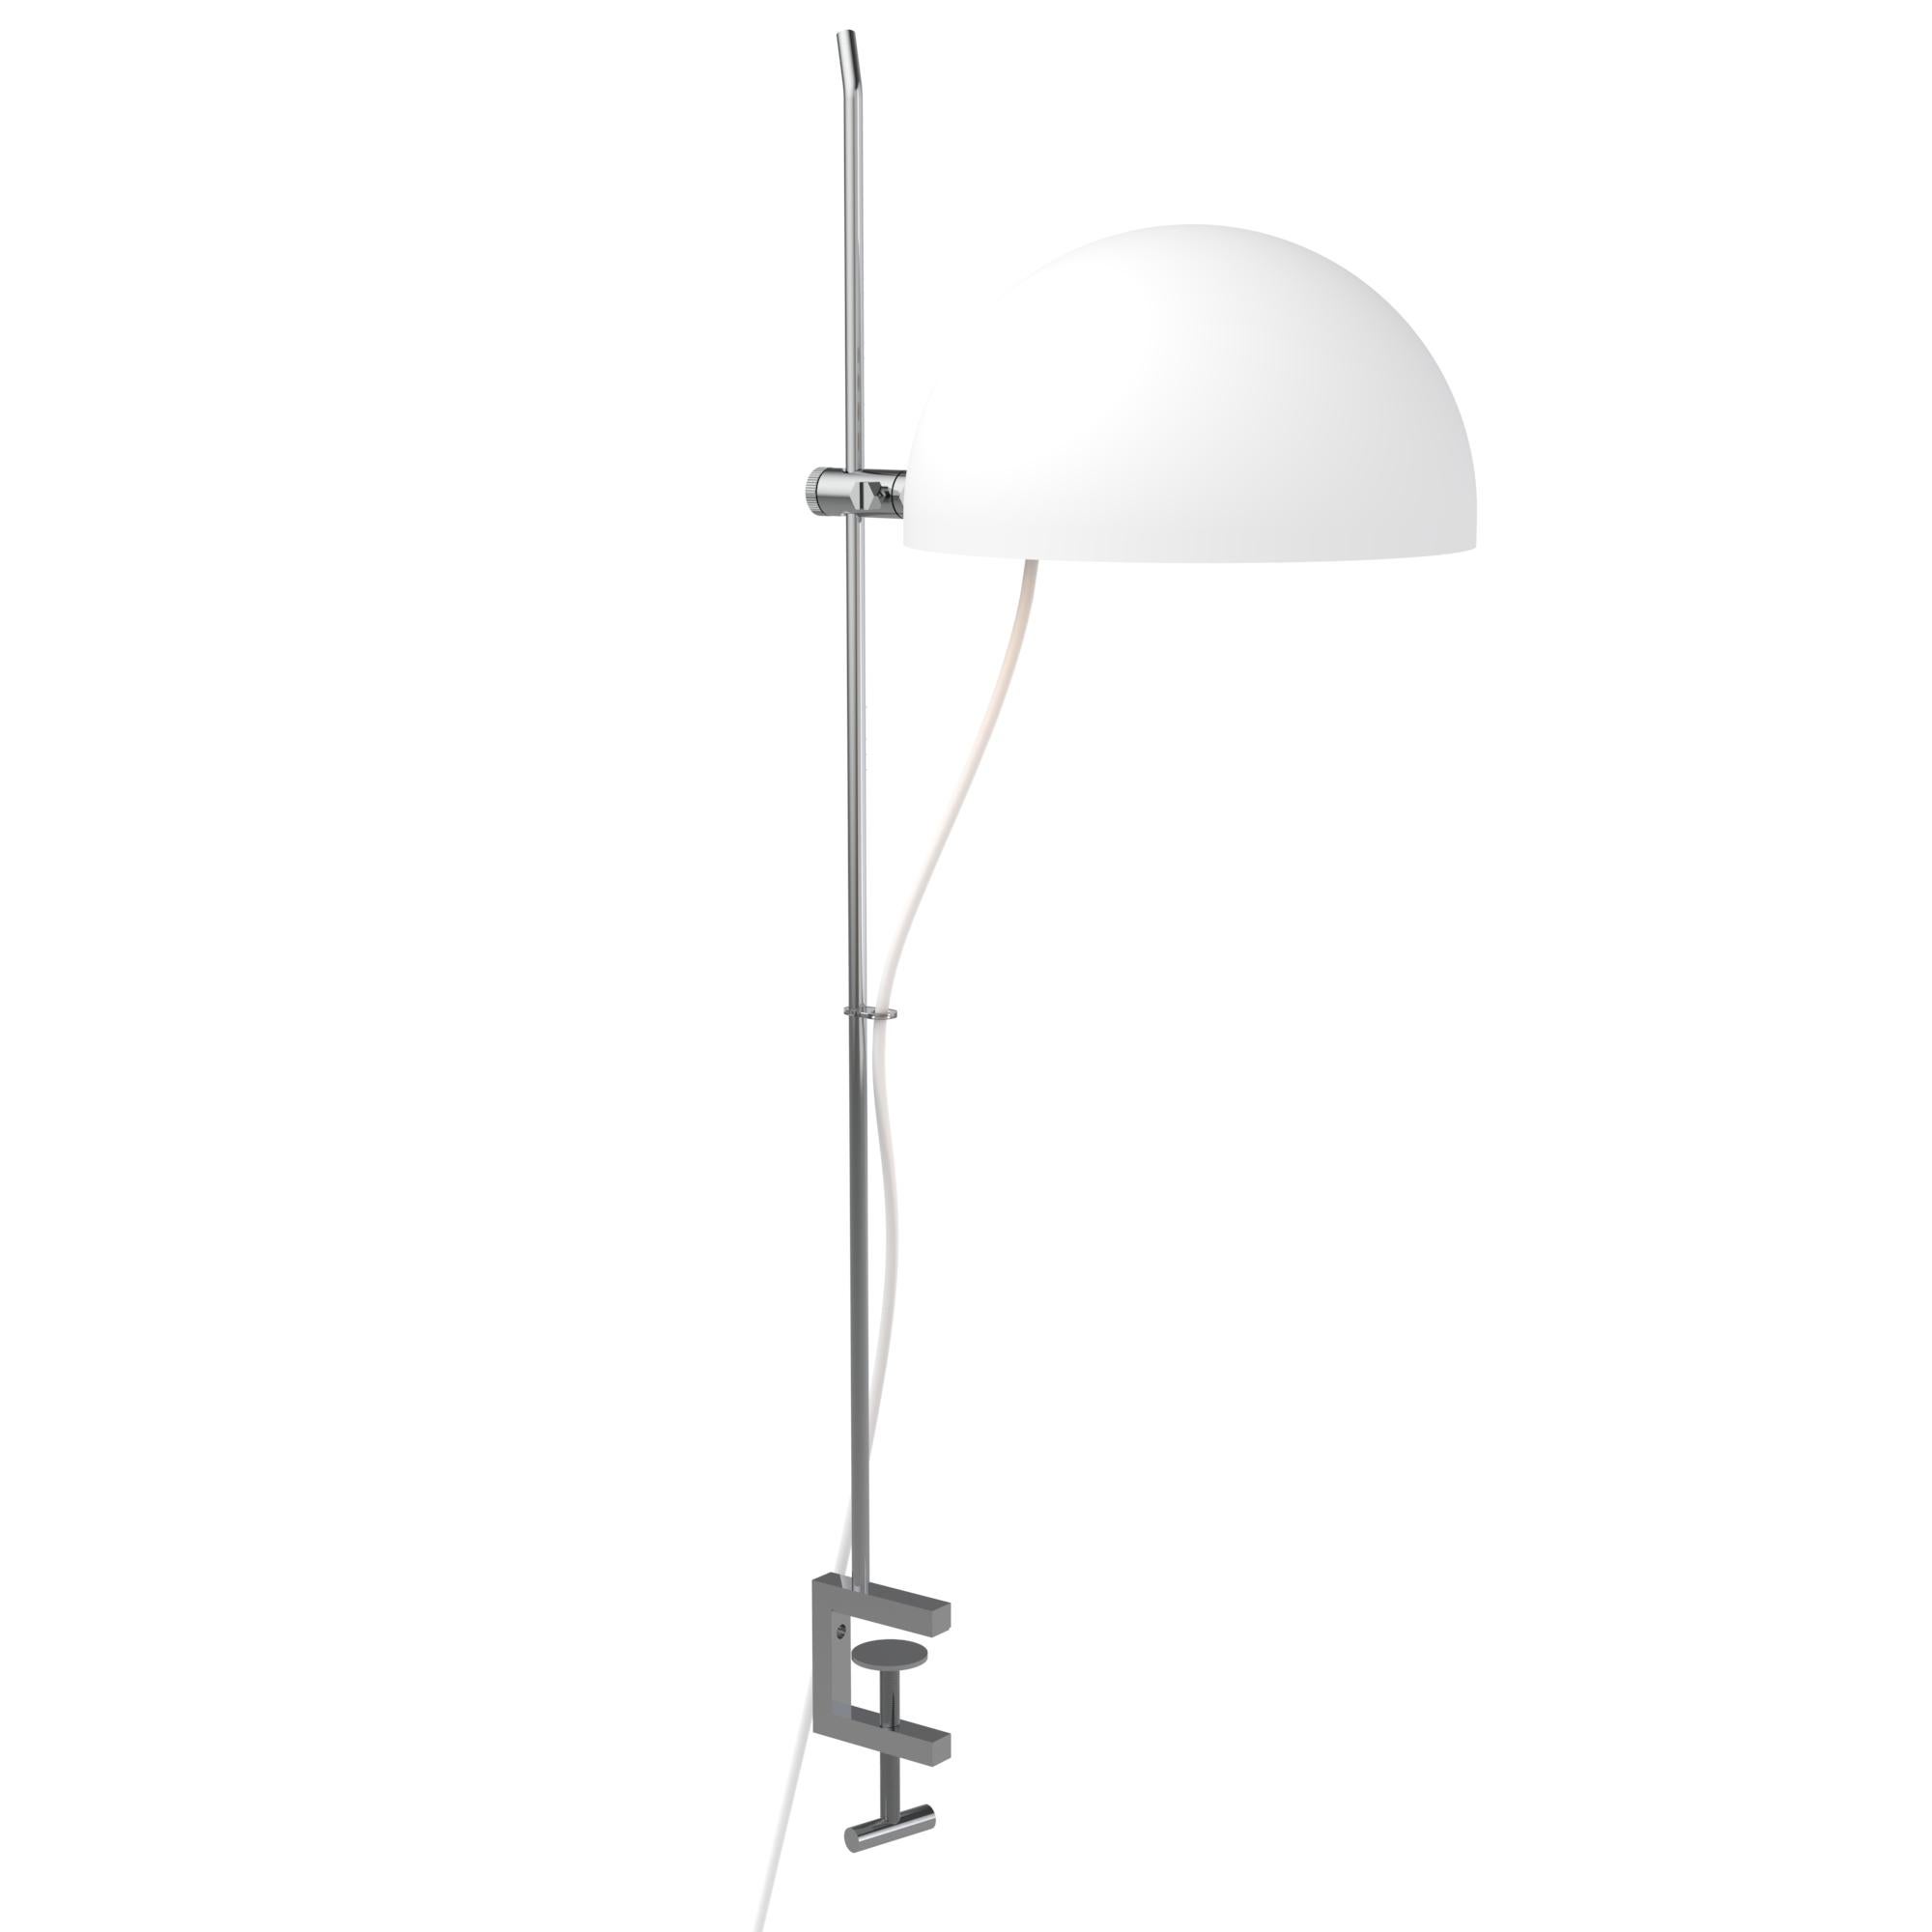 Mid-Century Modern Alain Richard 'A22f' Task Lamp in White for Disderot For Sale